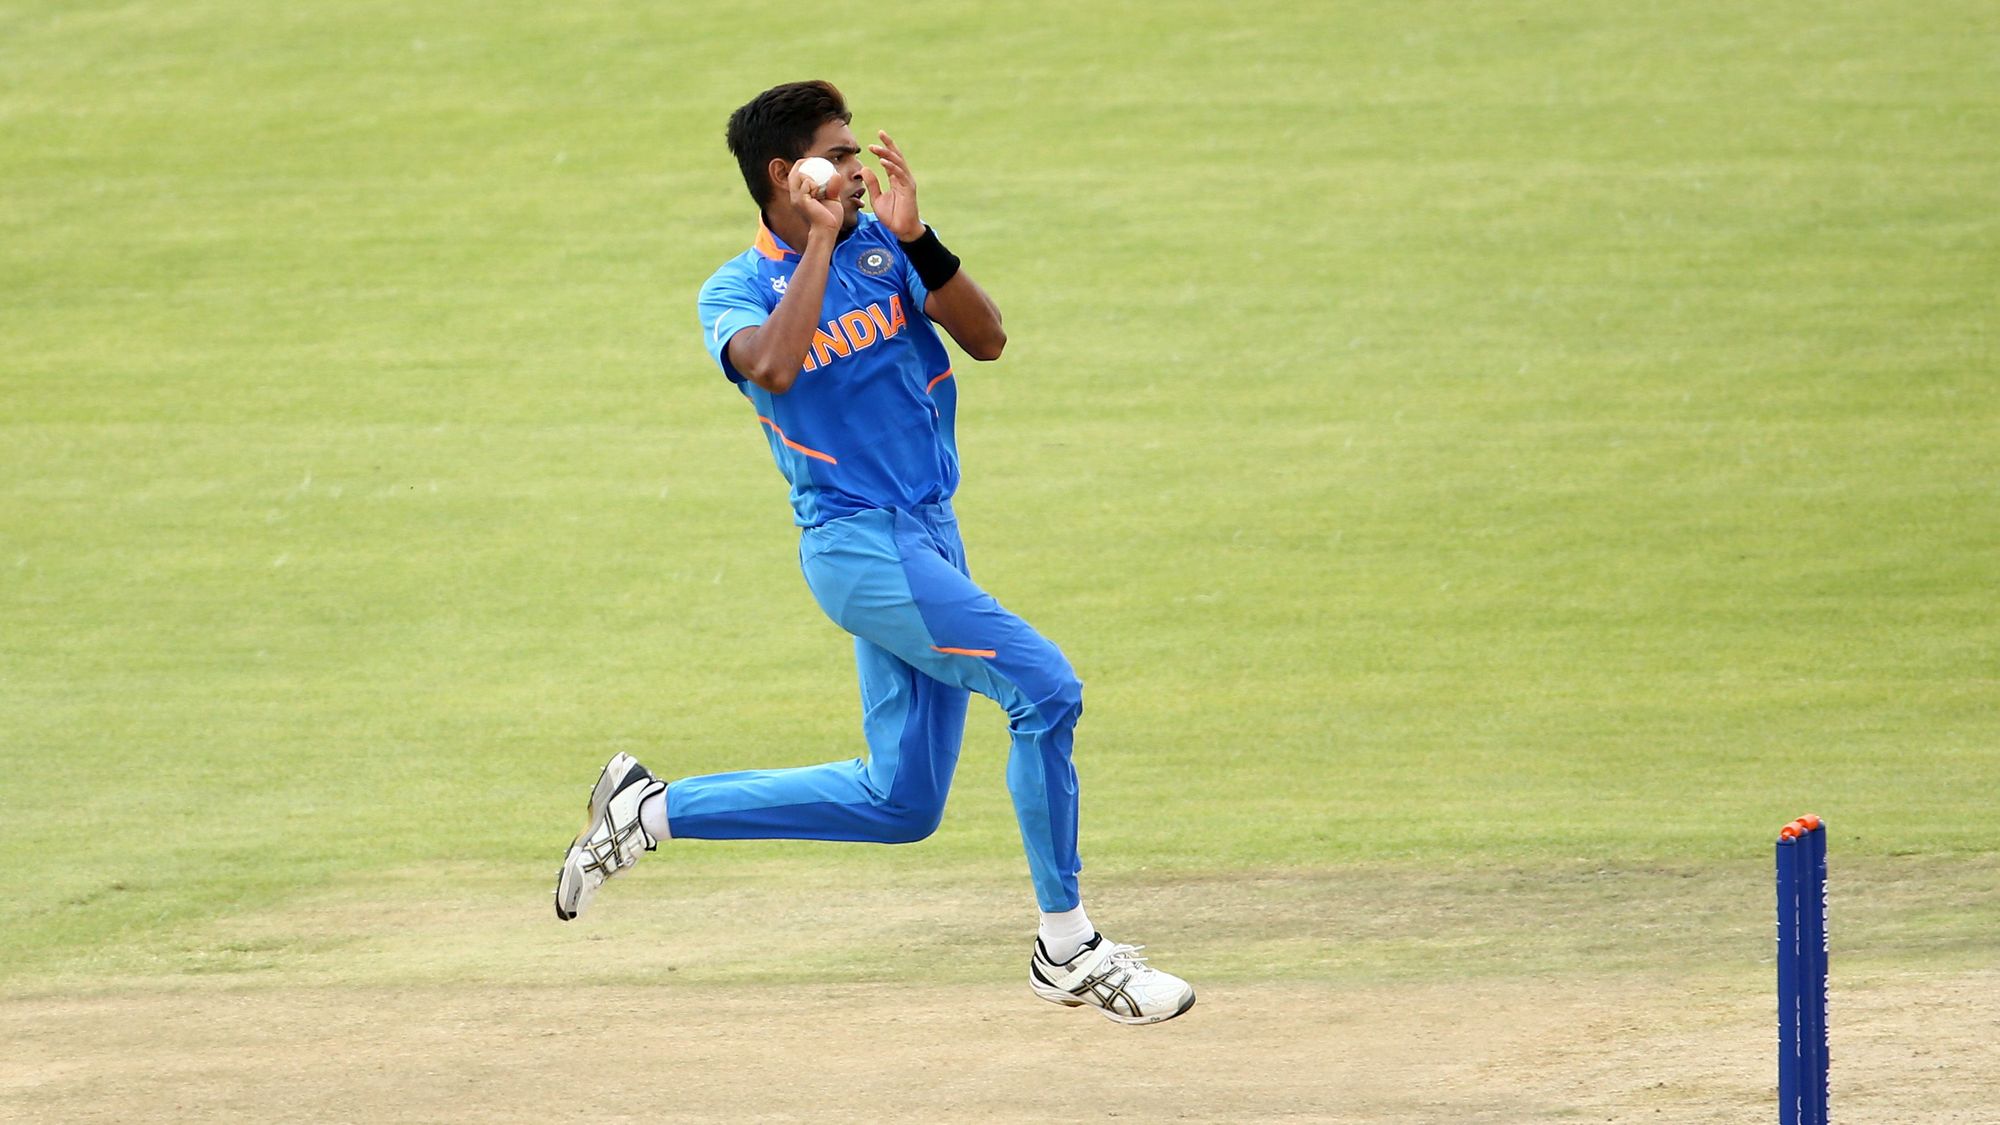 ४२ धावांच्या आव्हानाचा पाठलाग करताना भारताचा सलामीवीर यशस्वी जैस्वाल याने धमाकेदार खेळी केली. (फोटो सौजन्य - ICC वेबसाईट)